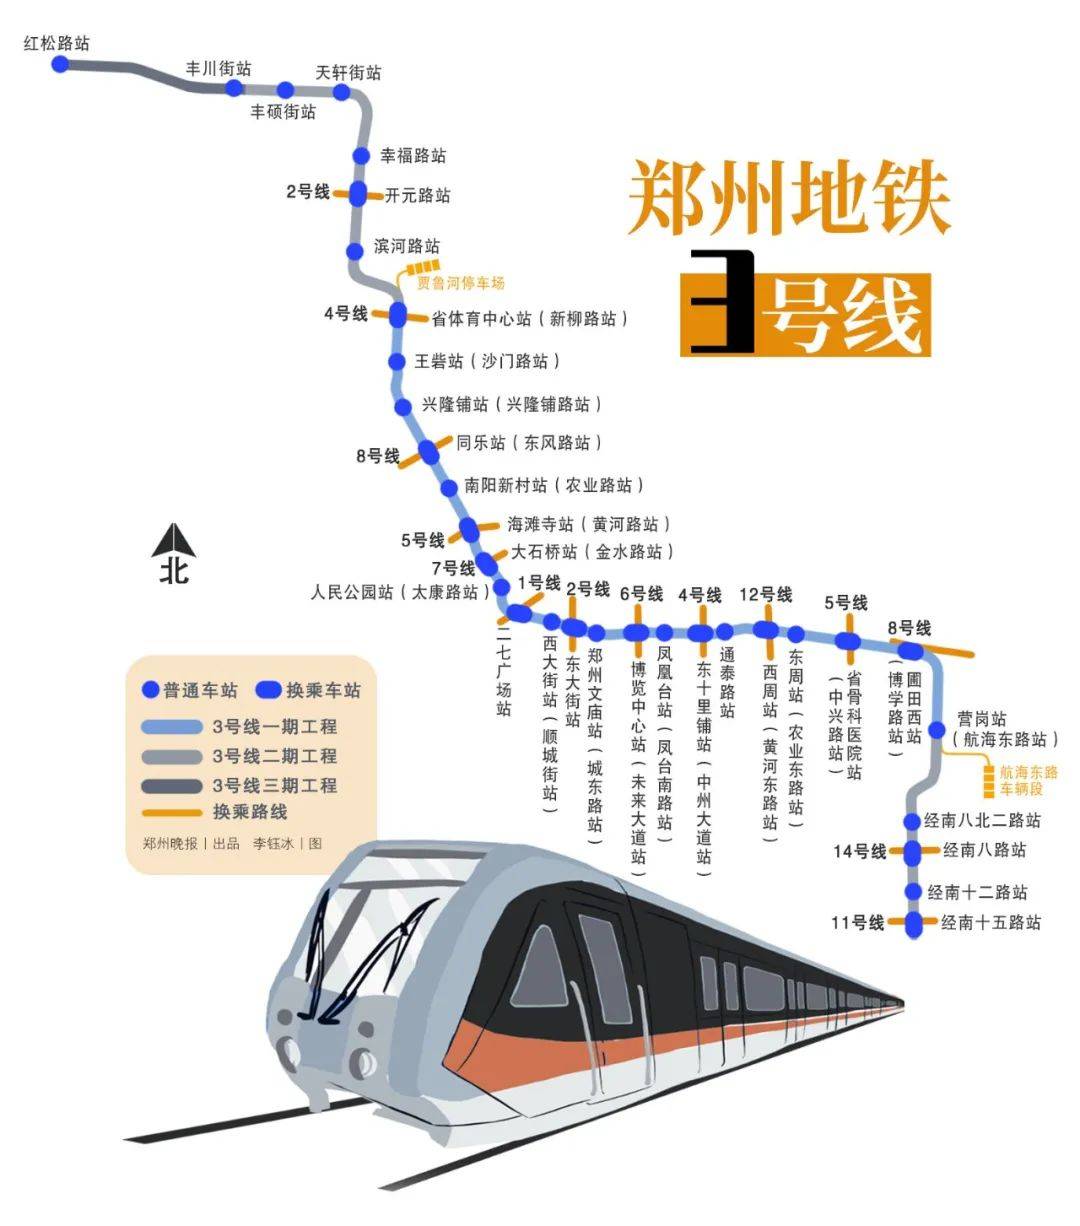 今起,郑州地铁3号线一期,4号线初期开通载客!河南3条高速同时开通!